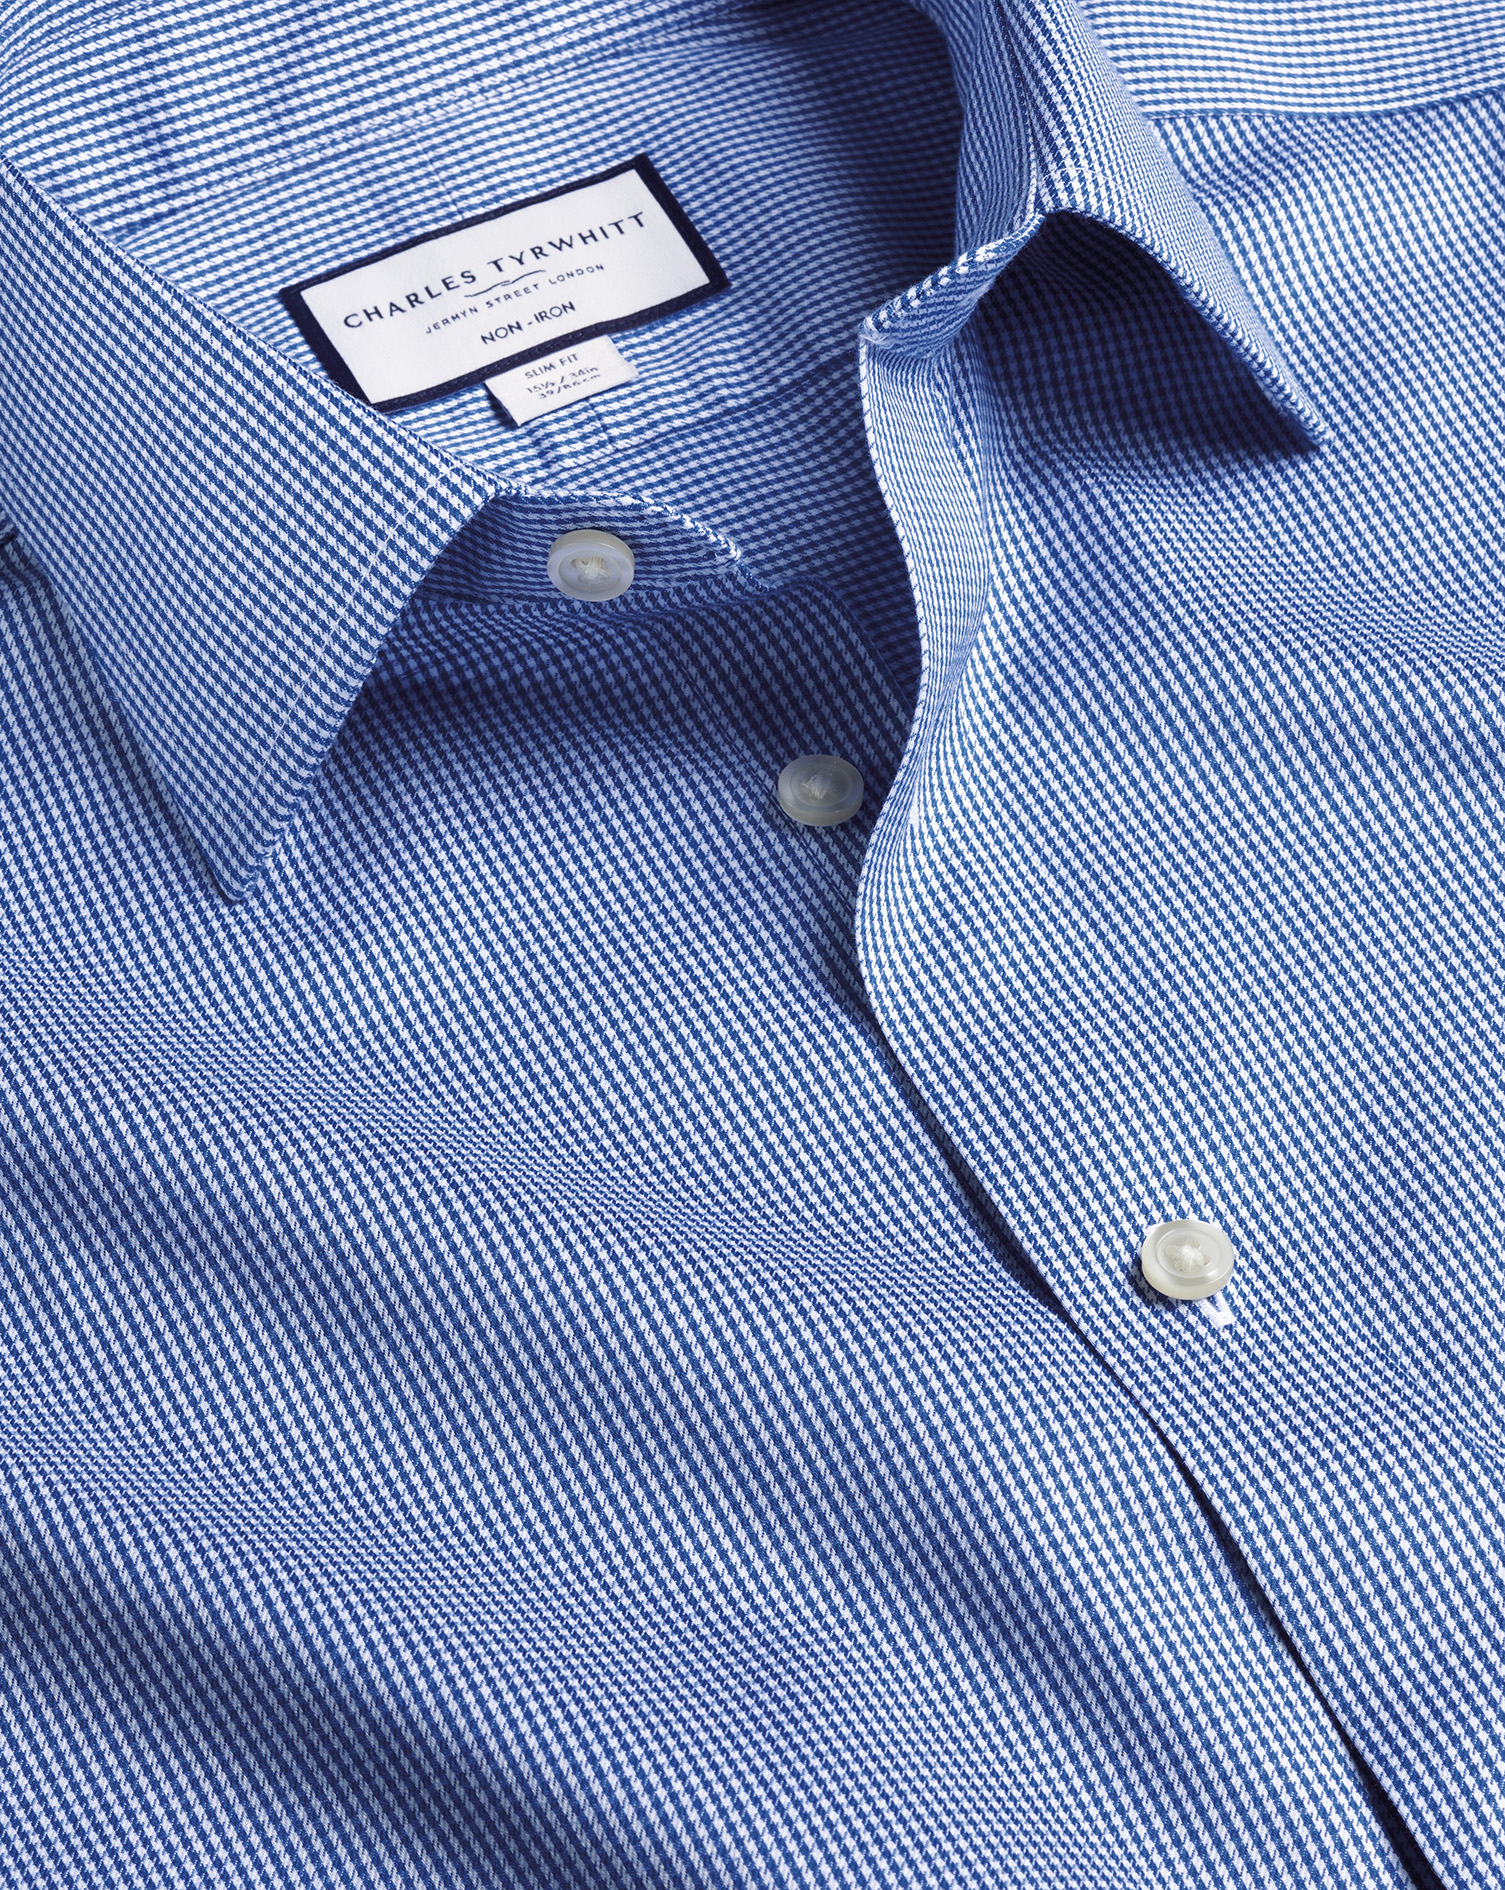 Men's Charles Tyrwhitt Non-Iron Puppytooth Dress Shirt - Royal Blue Single Cuff Size XXXL Cotton
